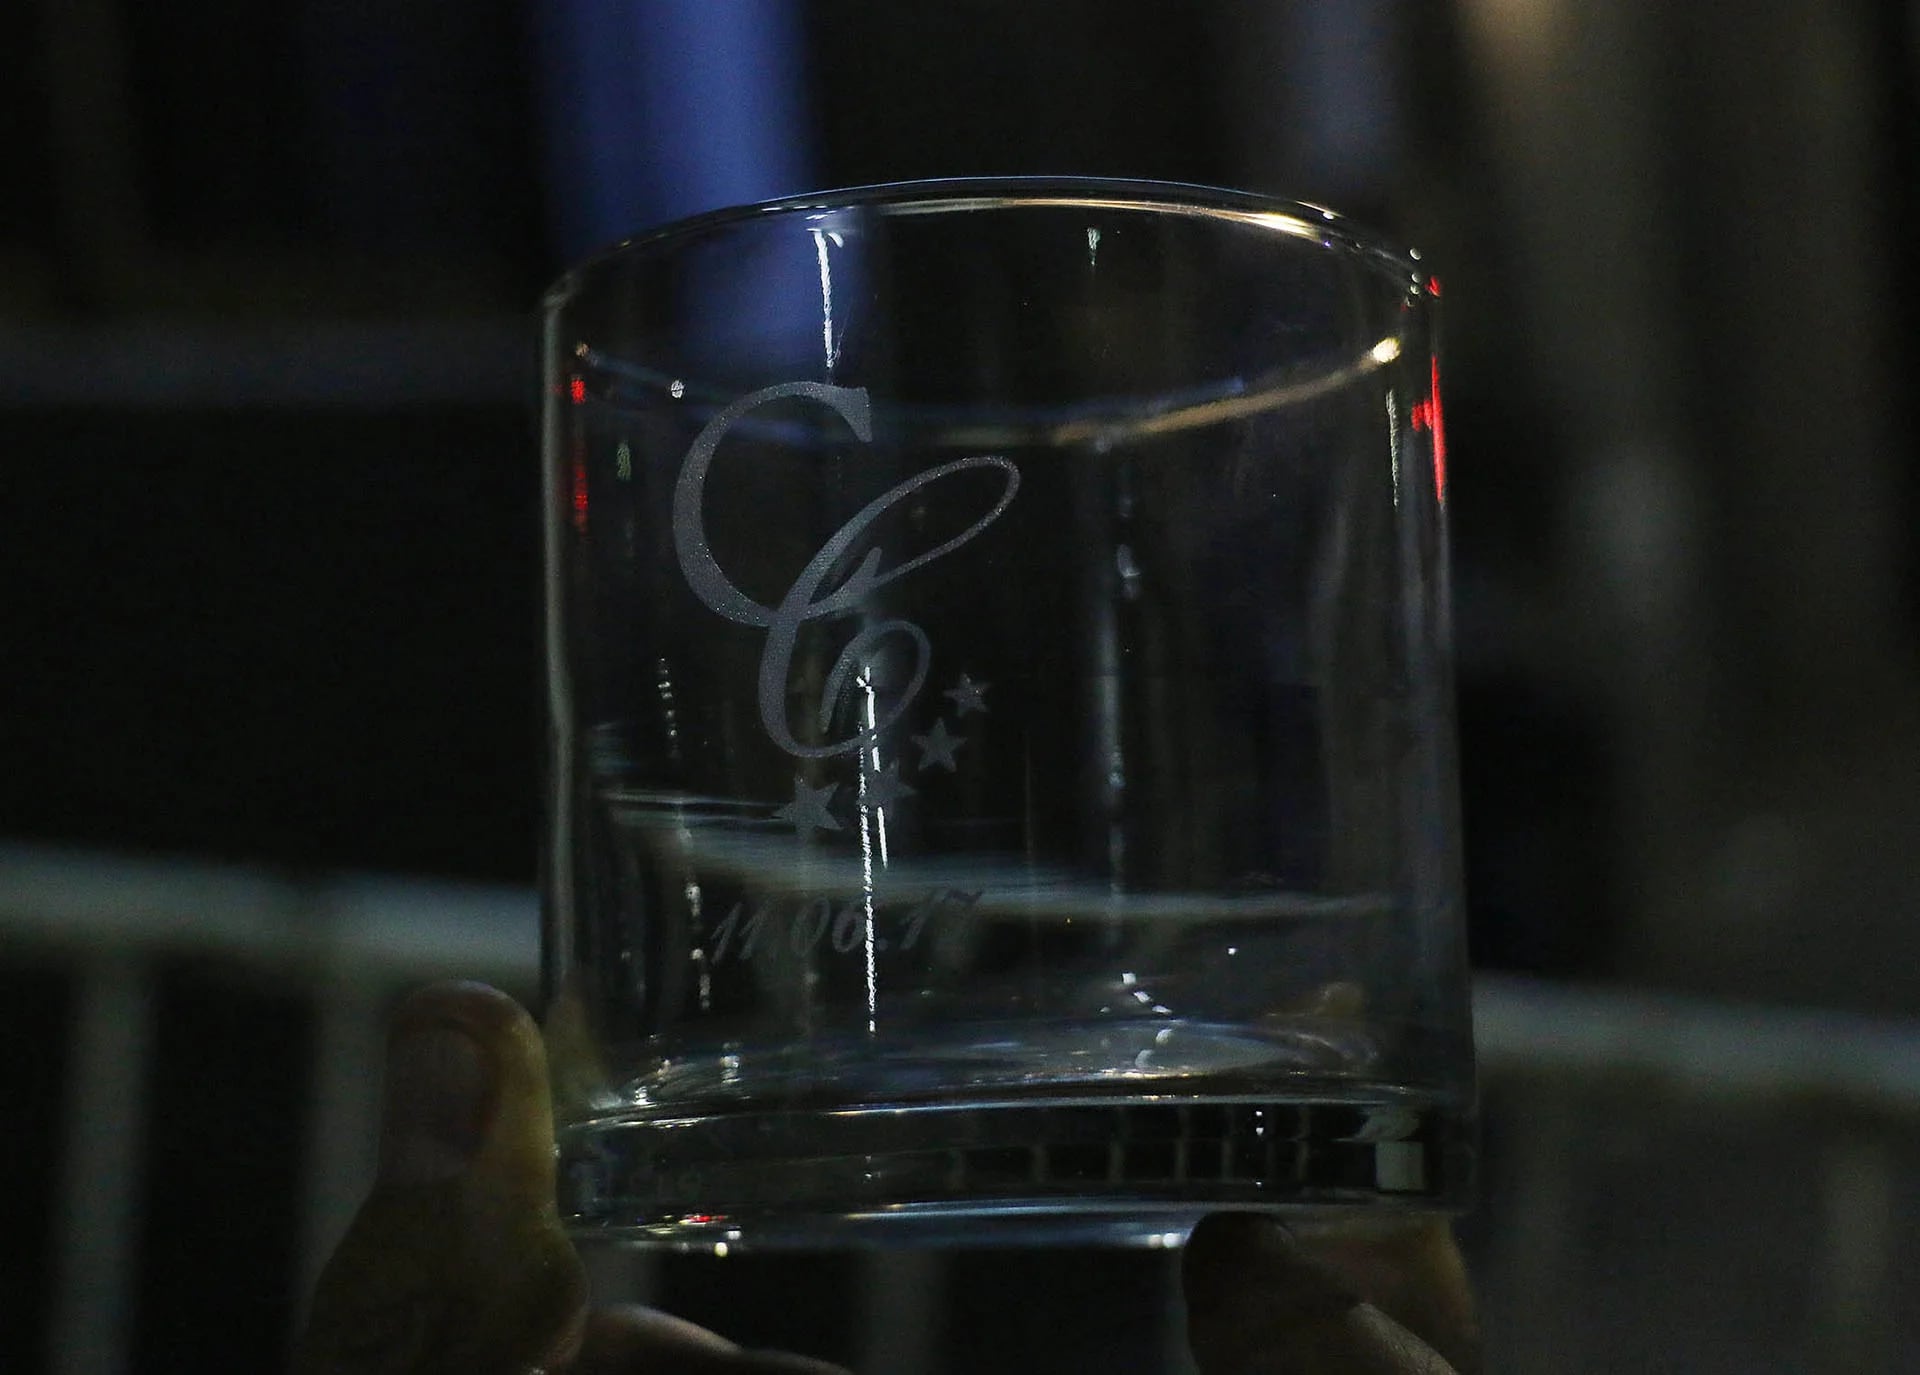 El souvenirs del cumple: un vaso con la inicial de Cacho Castaña y la fecha de su cumpleaños